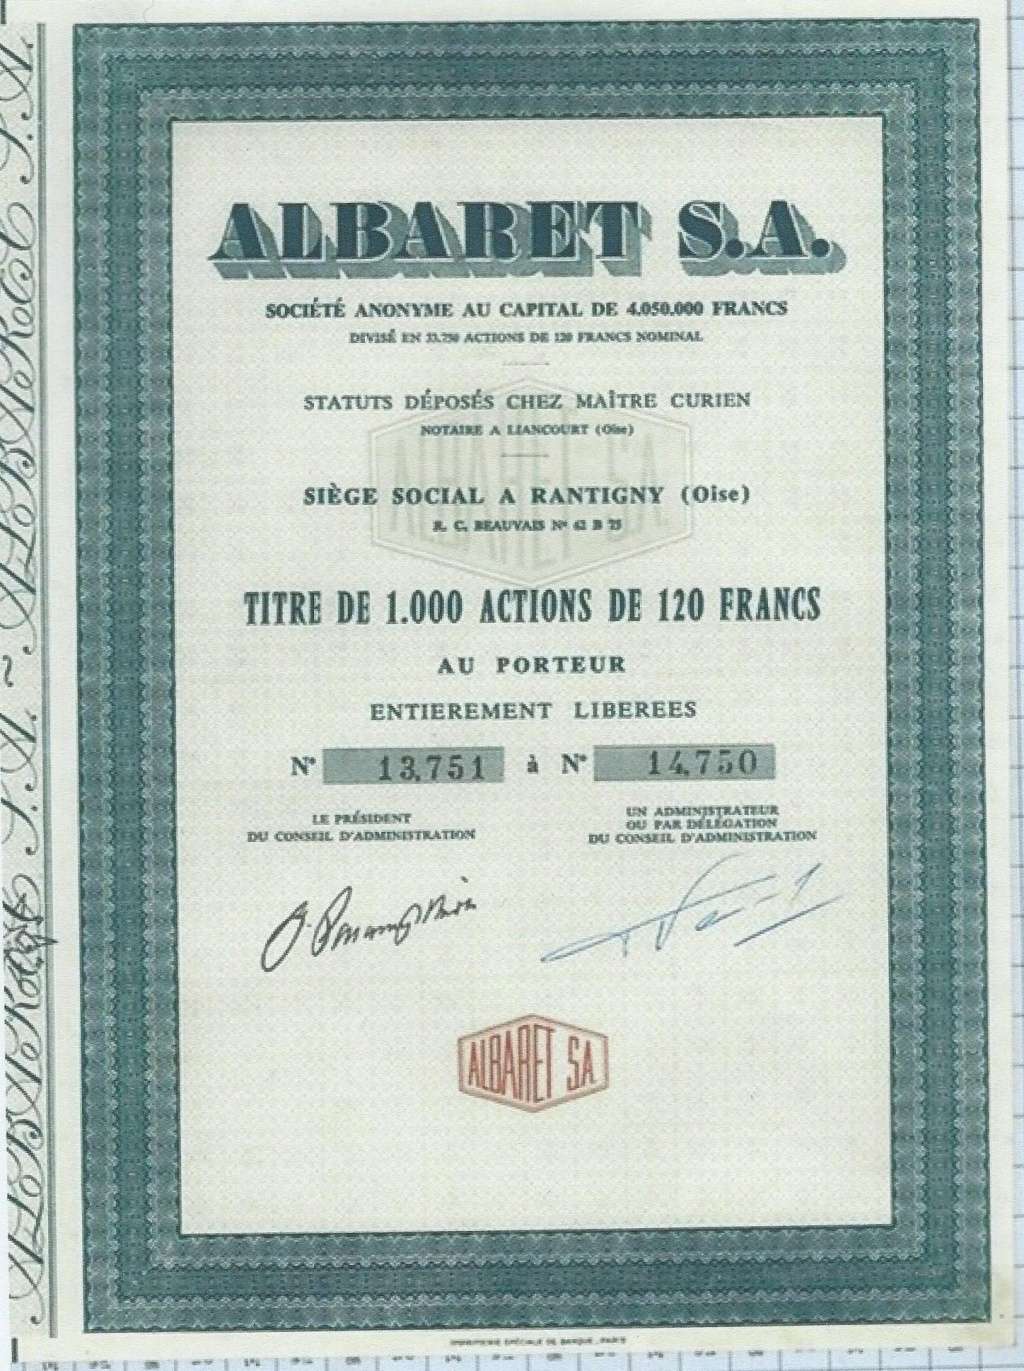 01 - Le moteur ALBARET d'Auguste BERNARD Titre_10